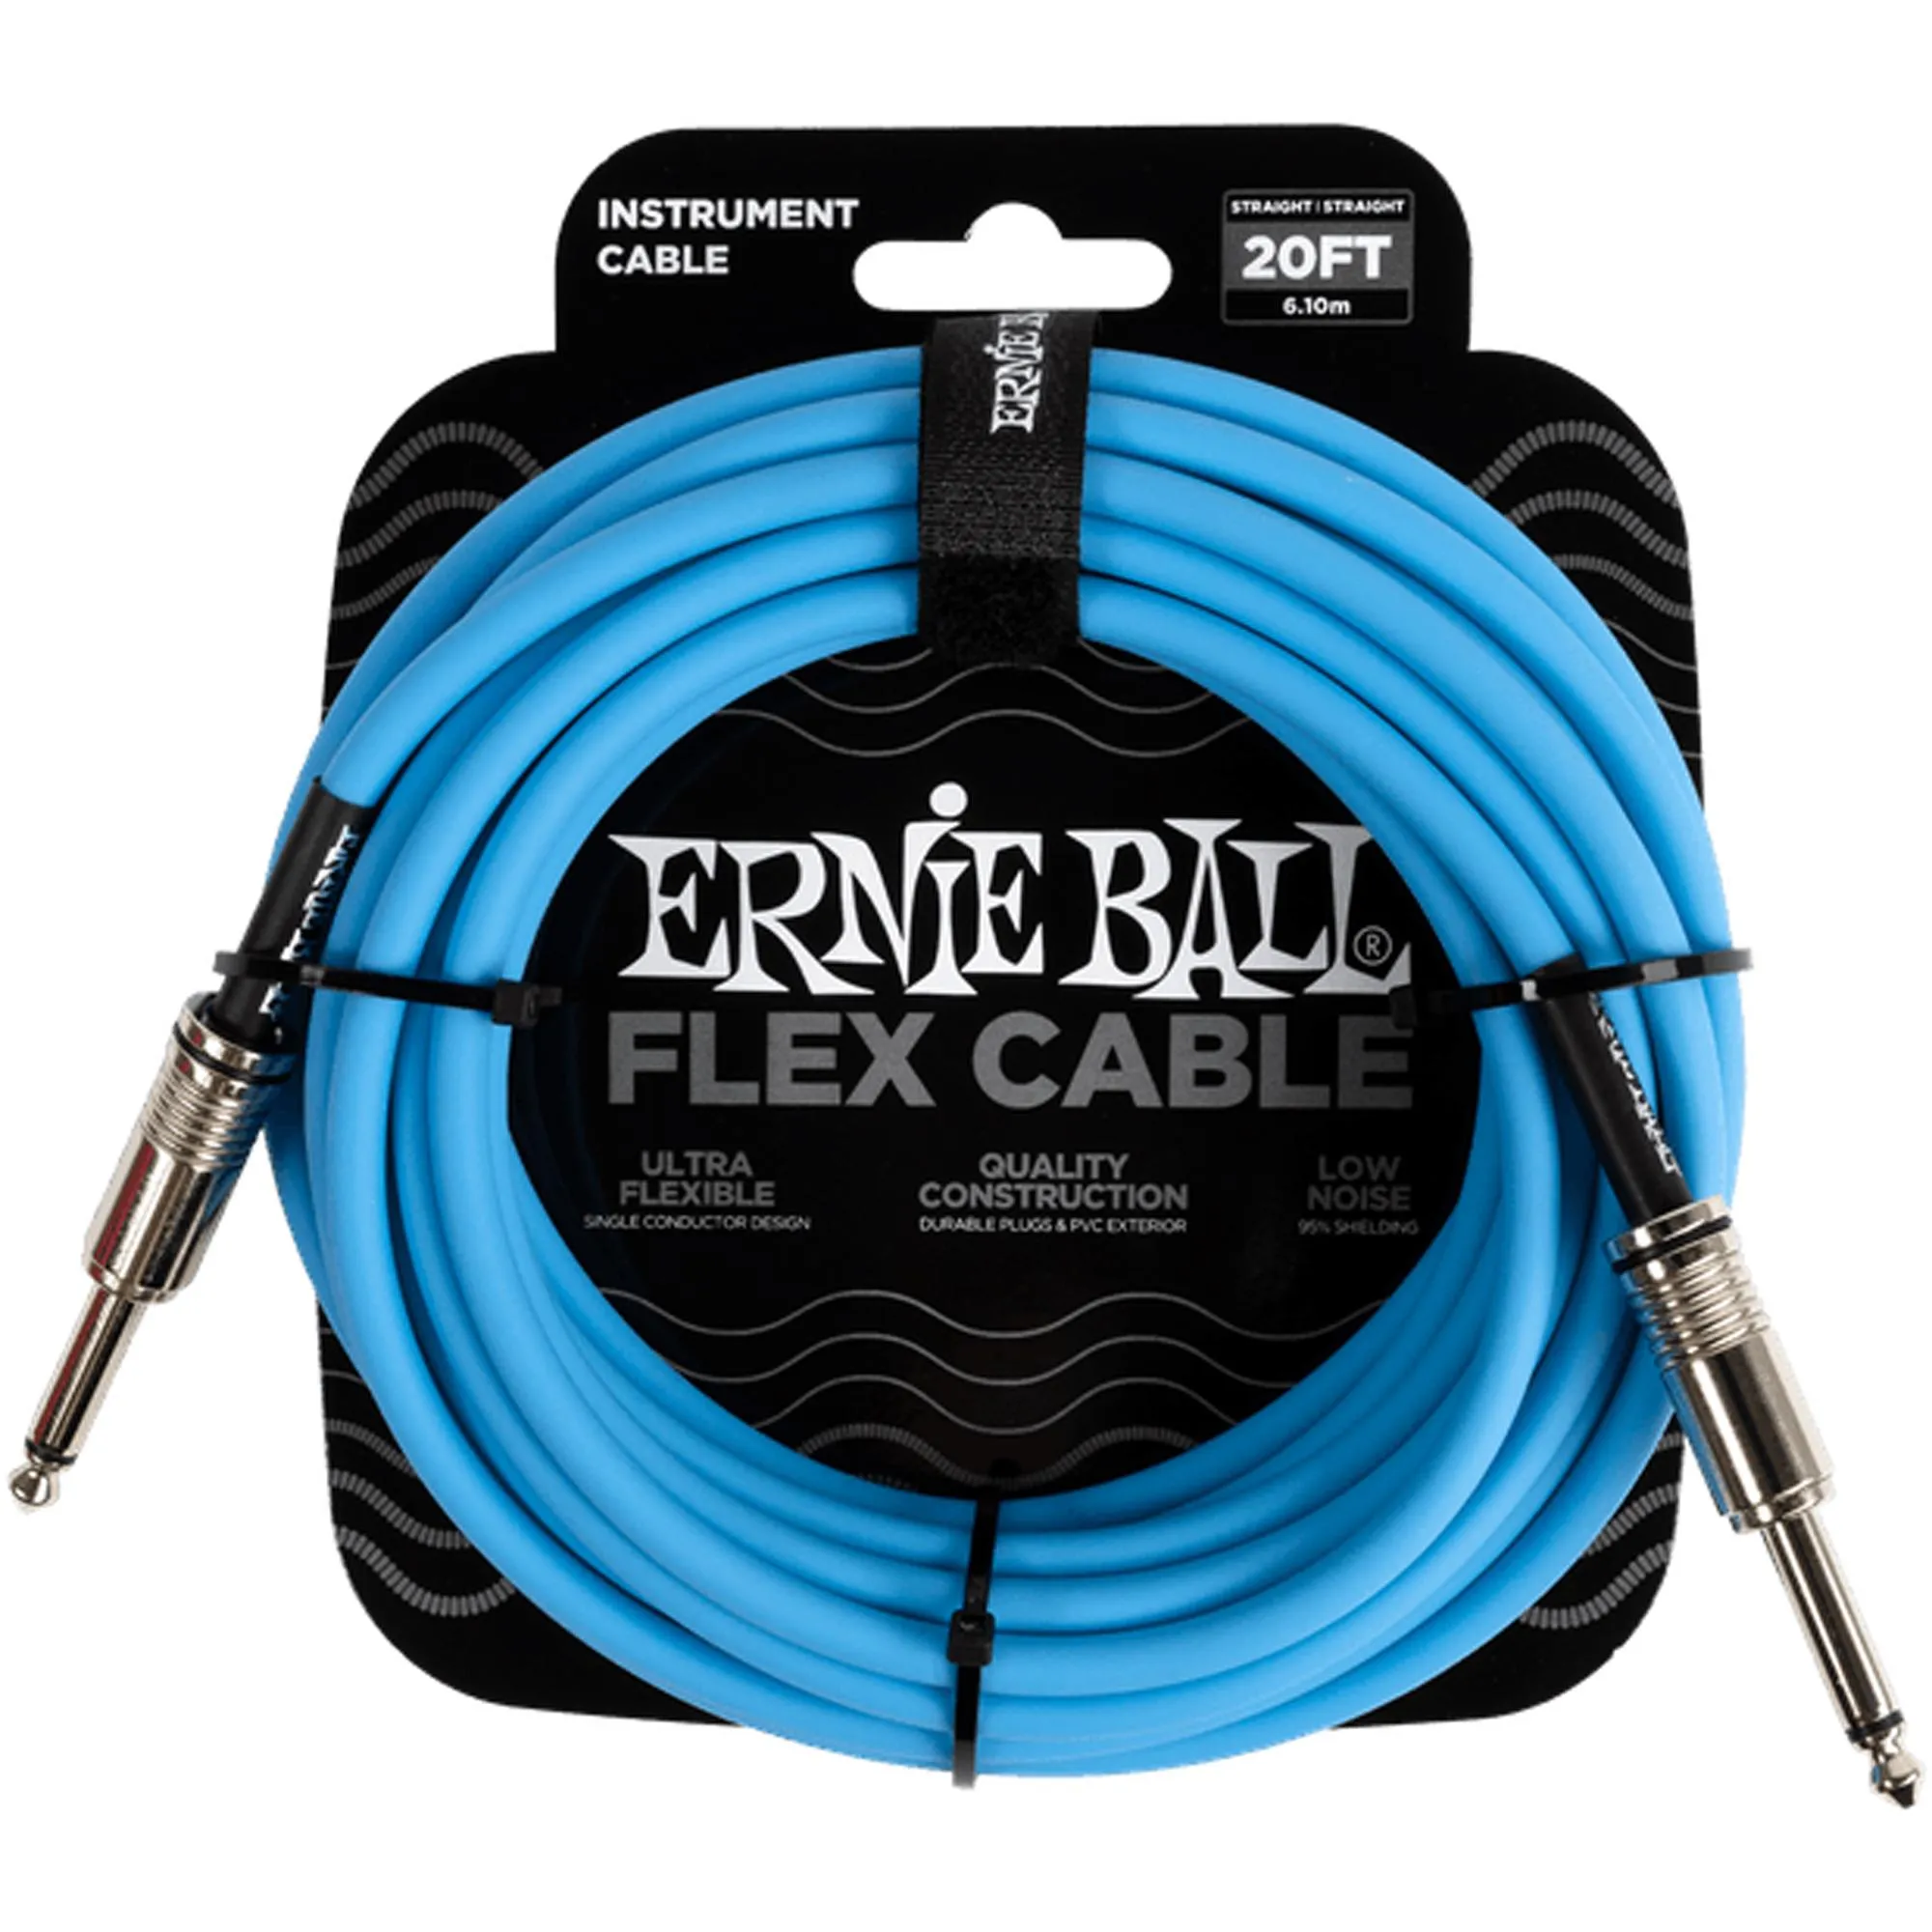 Cabo Para Instrumento 6m Azul P06417 Ernie Ball por 189,99 à vista no boleto/pix ou parcele em até 7x sem juros. Compre na loja Mundomax!